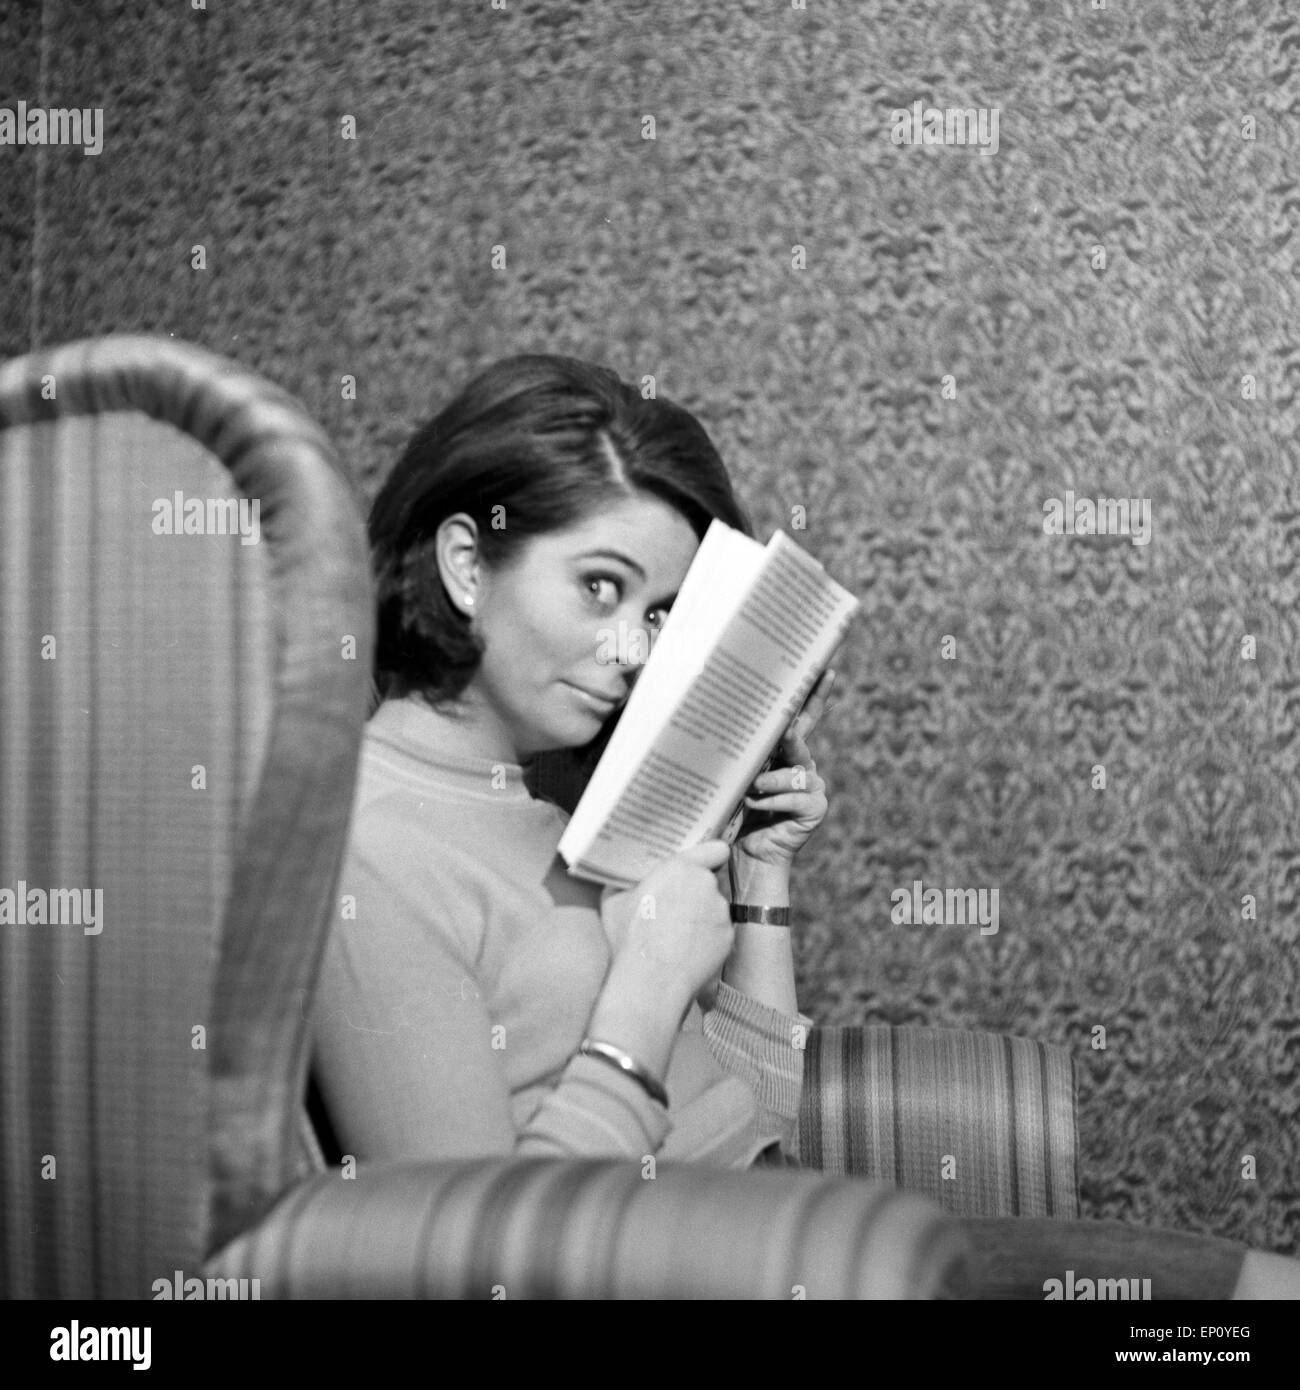 Norwegische Schlagersängerin Wencke Myhre versteckt sich im Wohnzimmersessel hinter einem Buch, 1960er Jahre. Norwegian schl Stock Photo